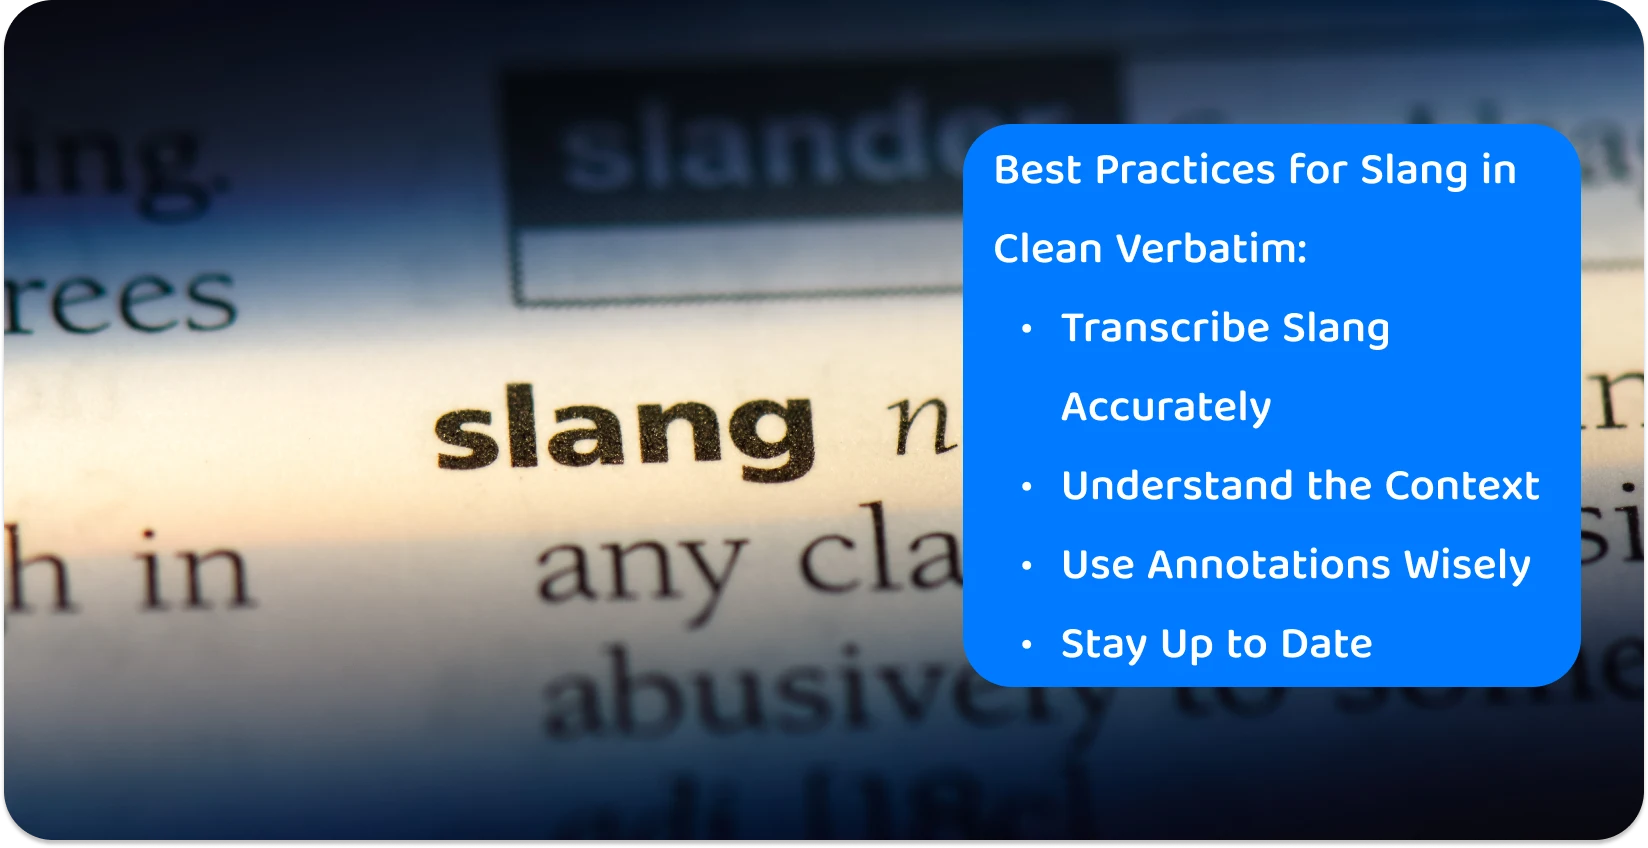 Nærbillede af ordet 'slang' i en ordbog, der fremhæver den præcision, der er nødvendig i transskriptionspraksis for moderne folkesprog.